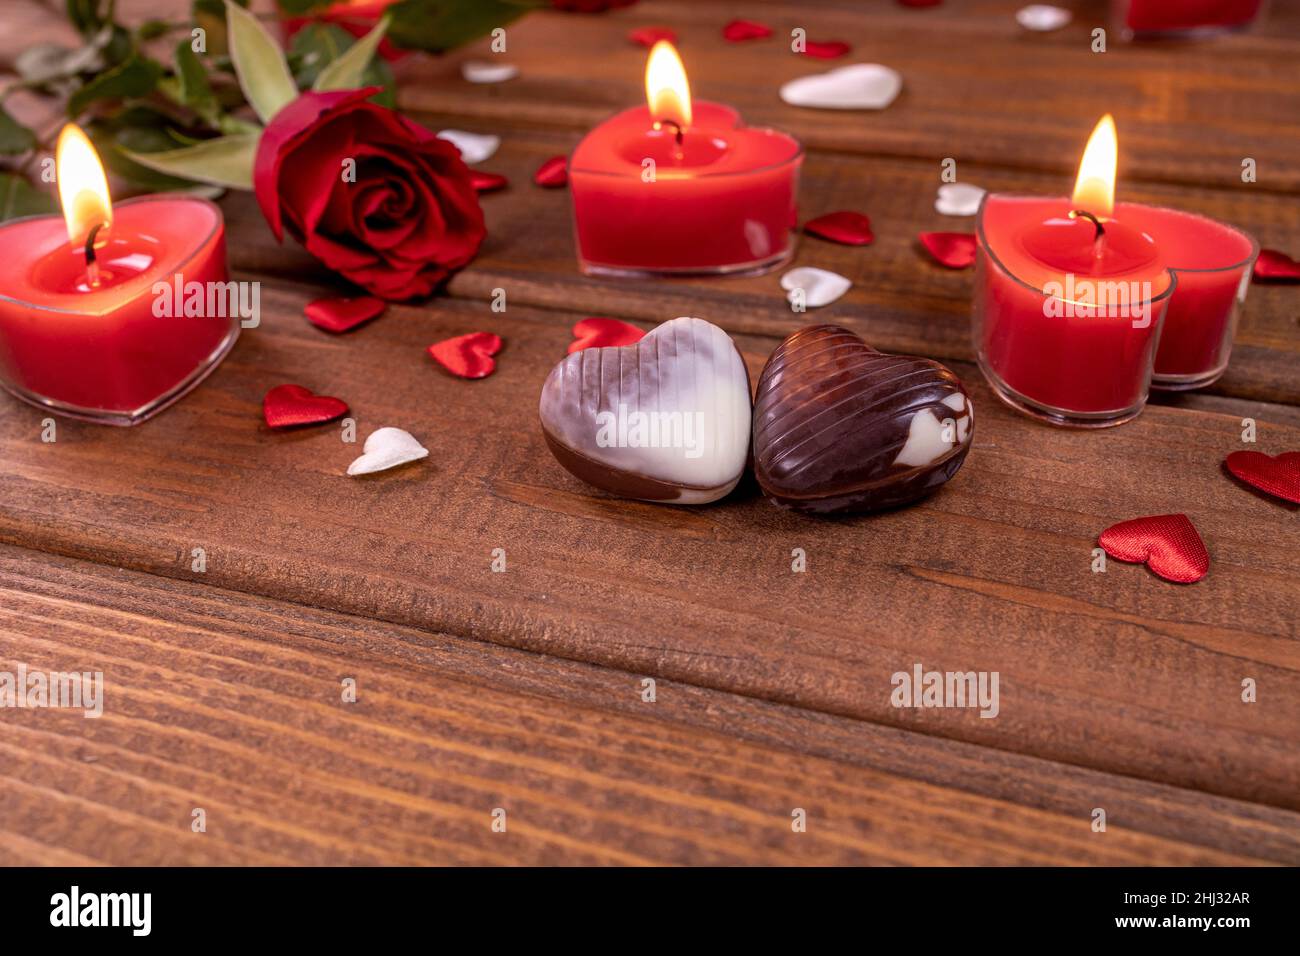 San Valentino concetto cioccolato caramelle a forma di cuore e rose rosse con candele su legno. Concetto di amore e romanticismo. Foto Stock